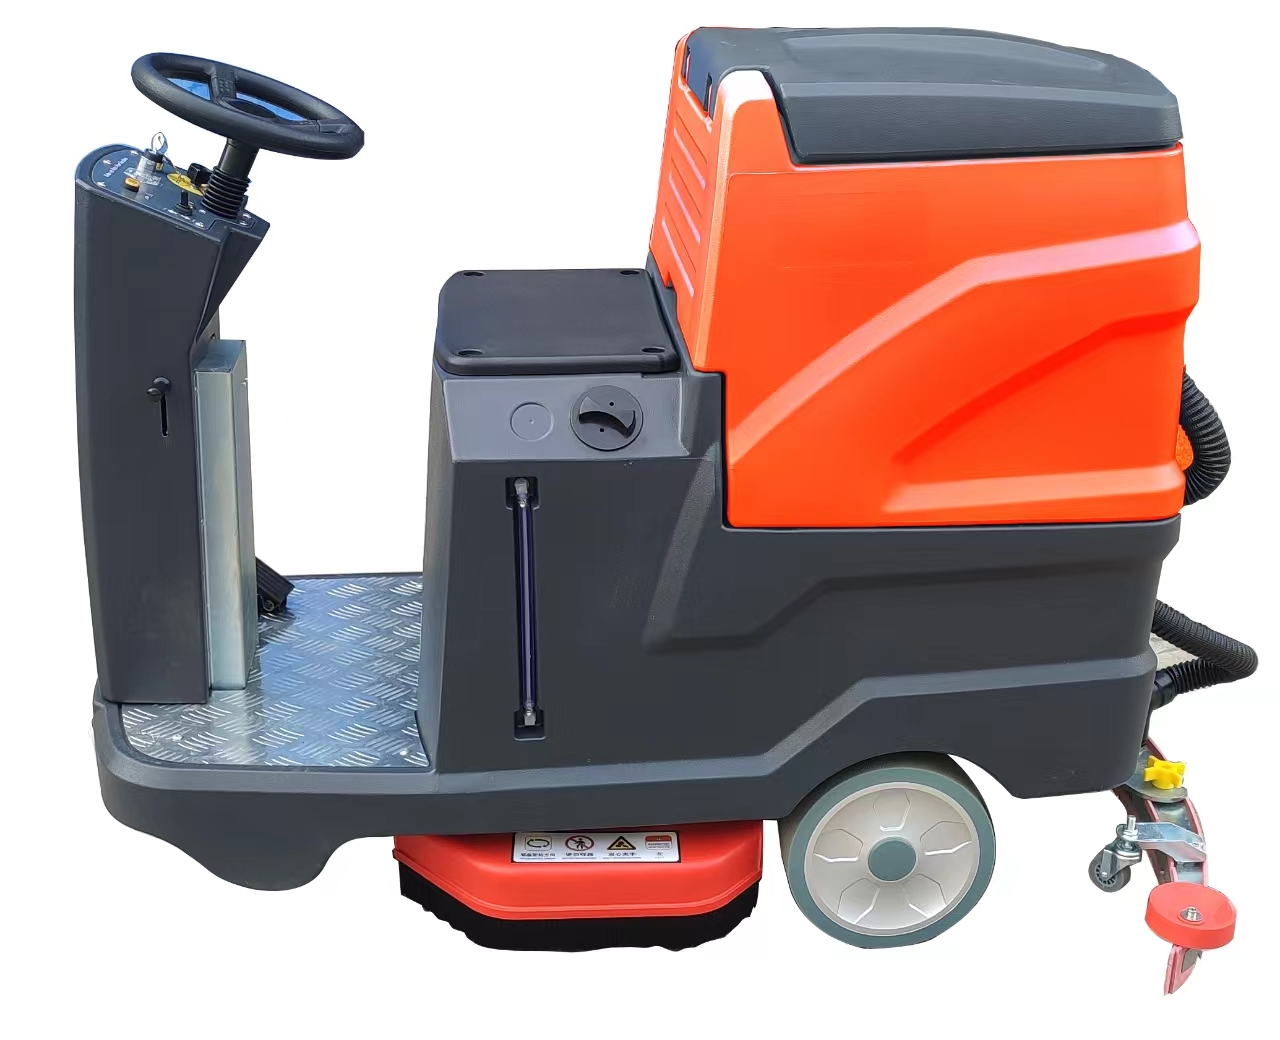 扬州市雨辰柯林驾驶式洗地机X66 双刷清洗吸干拖地机